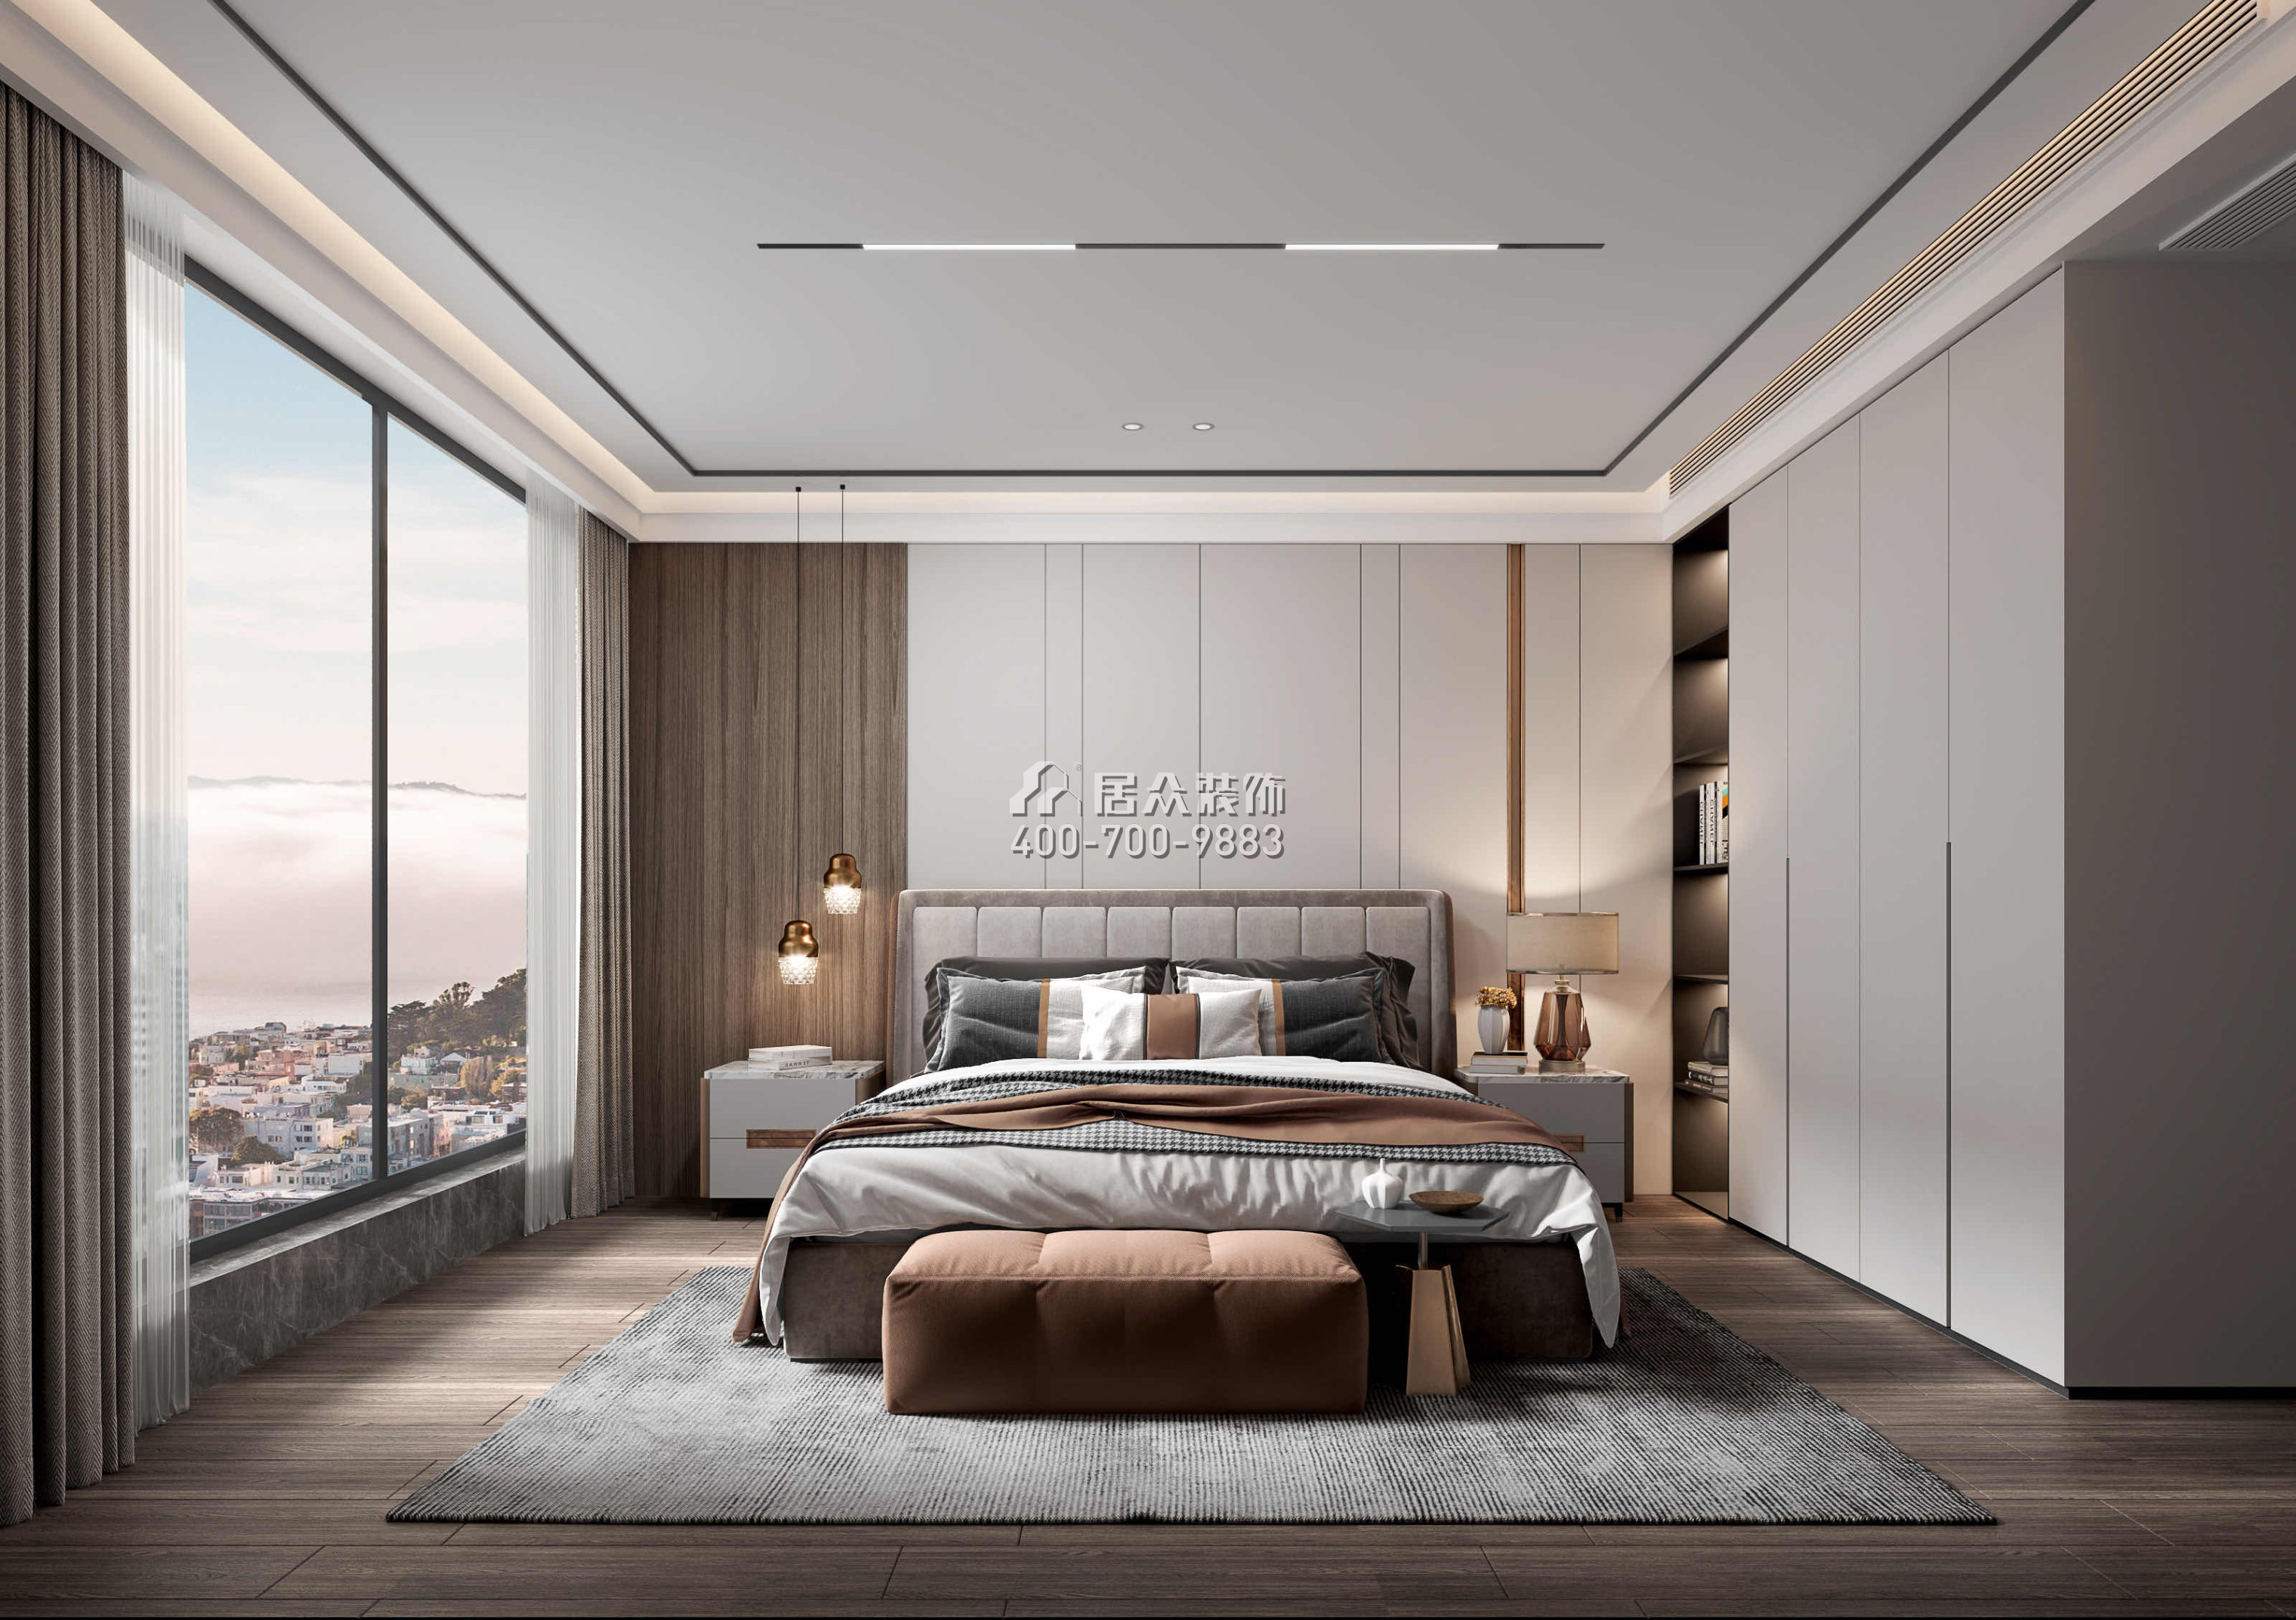 阳光粤海花园230平方米现代简约风格平层户型卧室装修效果图